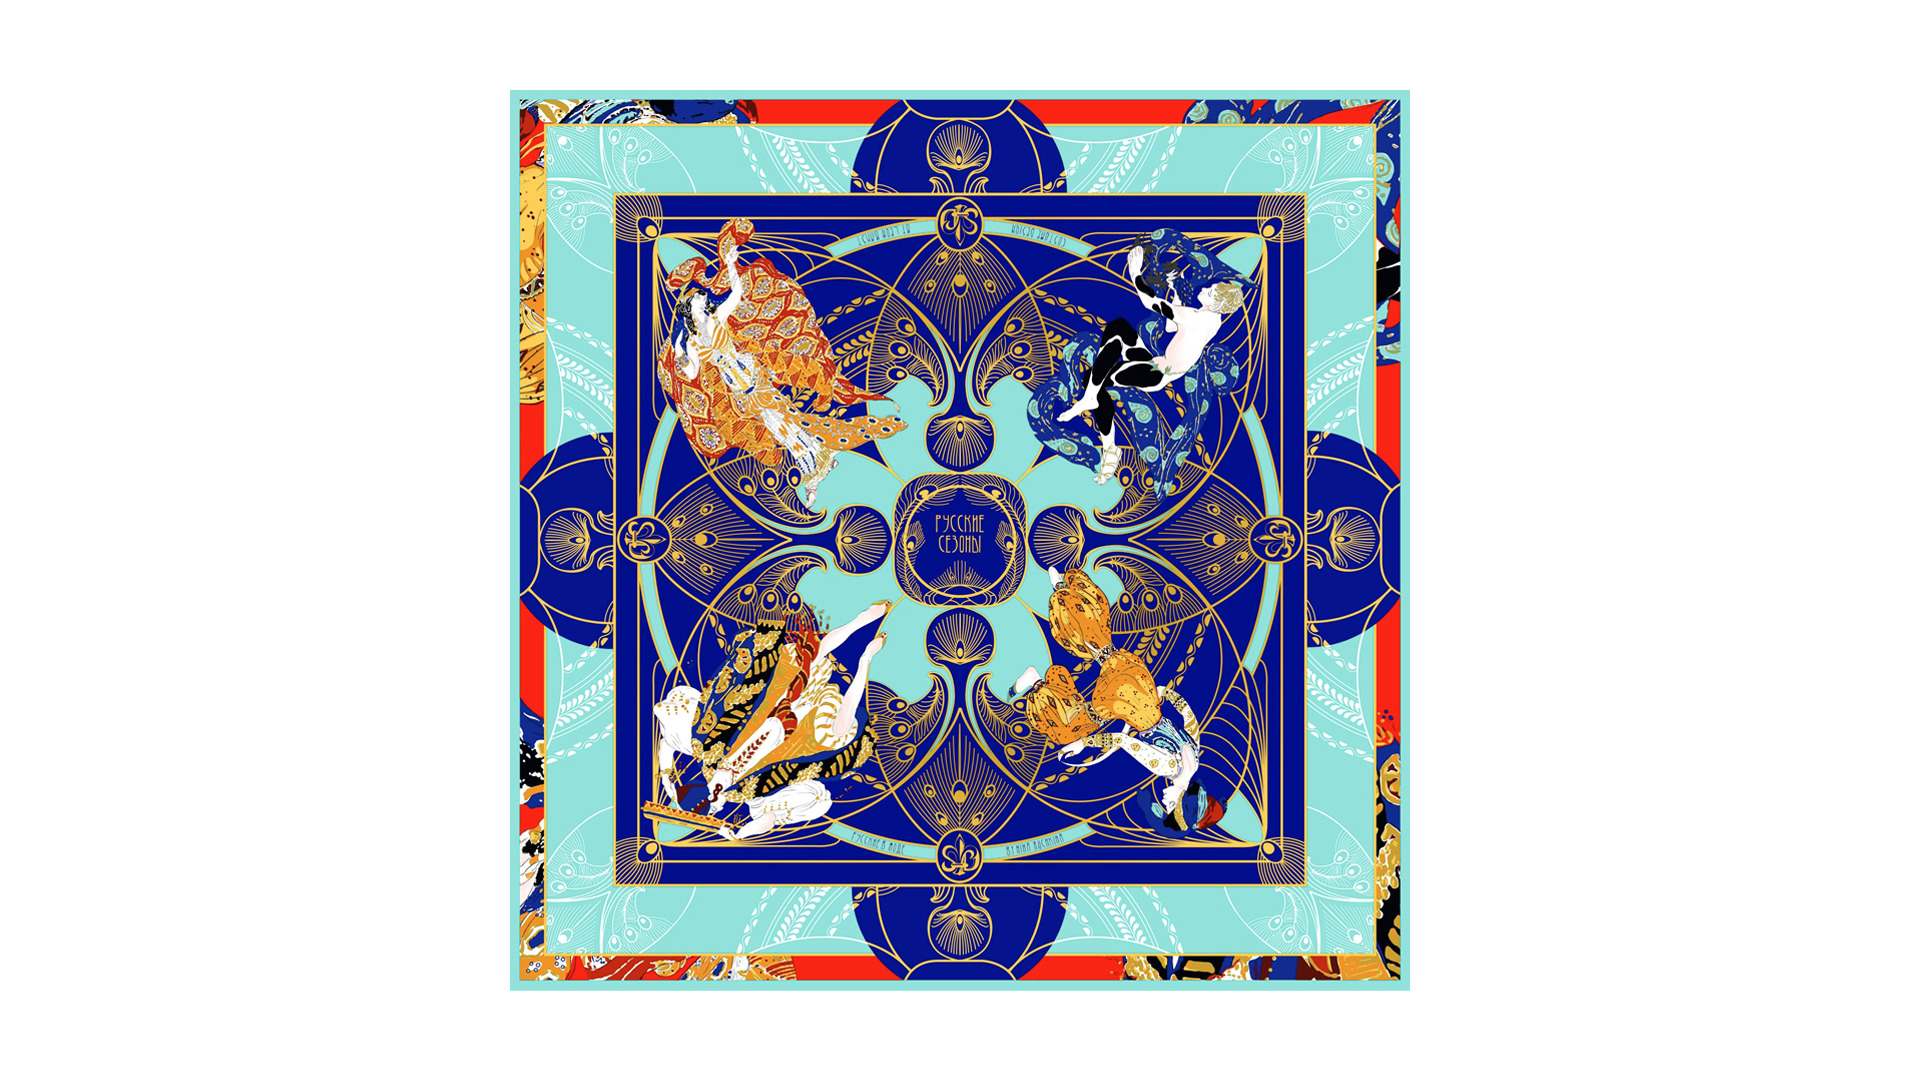 Платок сувенирный Русские в моде Русские сезоны Леон Бакст 90х90 см, шелк, вискоза, ручная подшивка